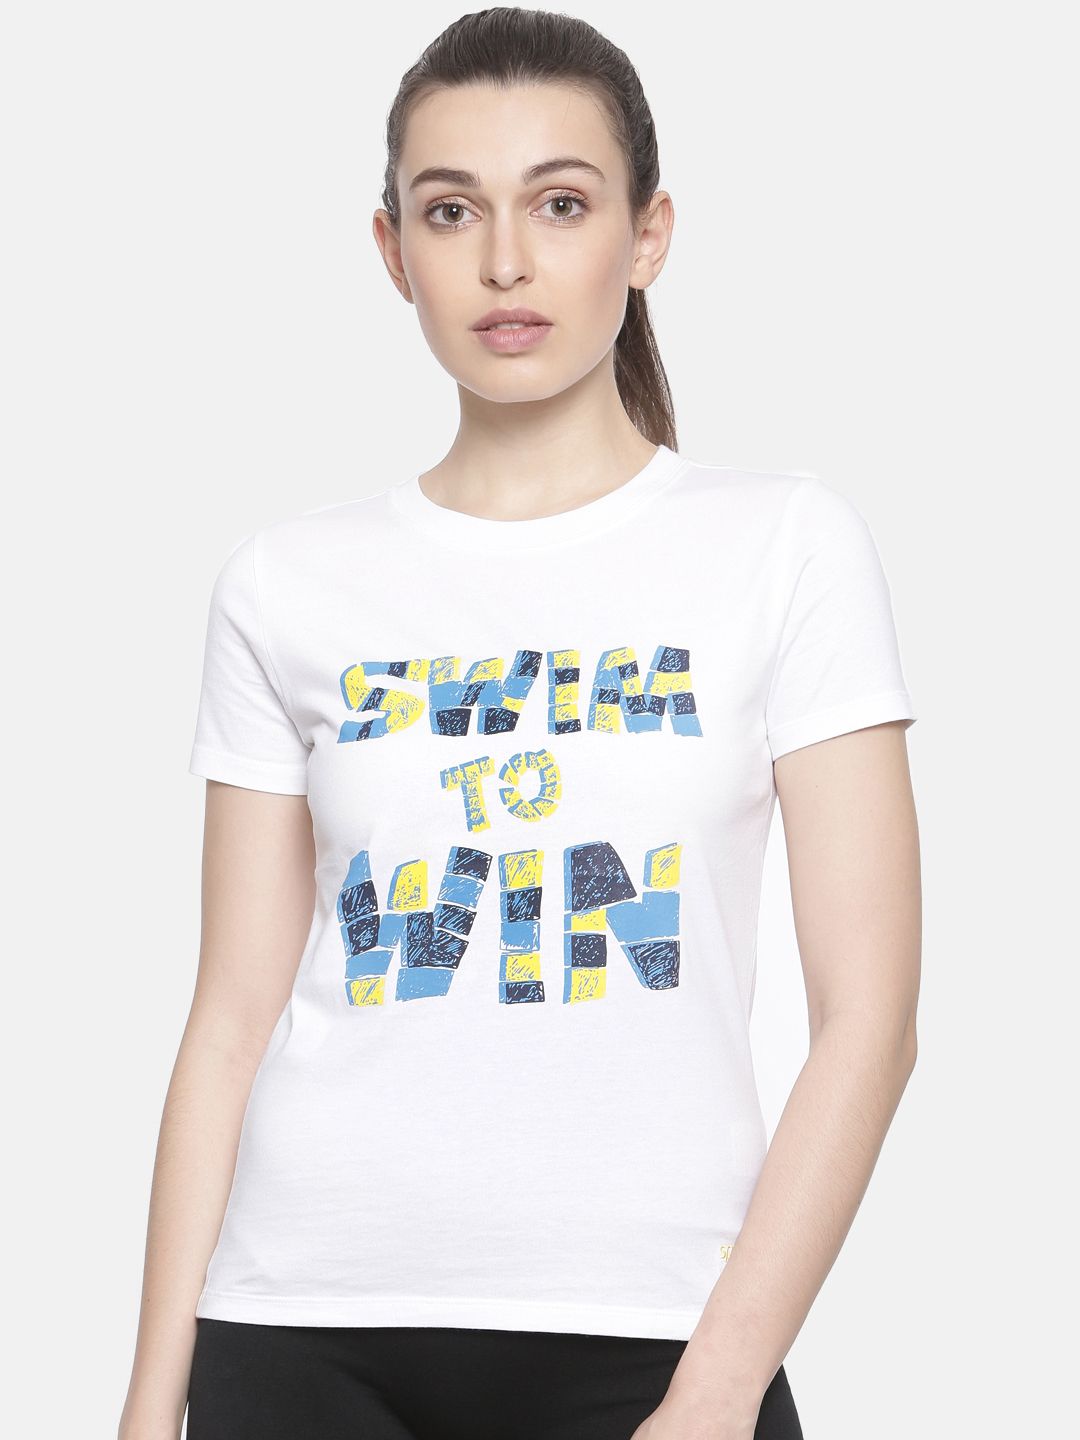 Speedo Women White Printed Round Neck T-shirt Price in India